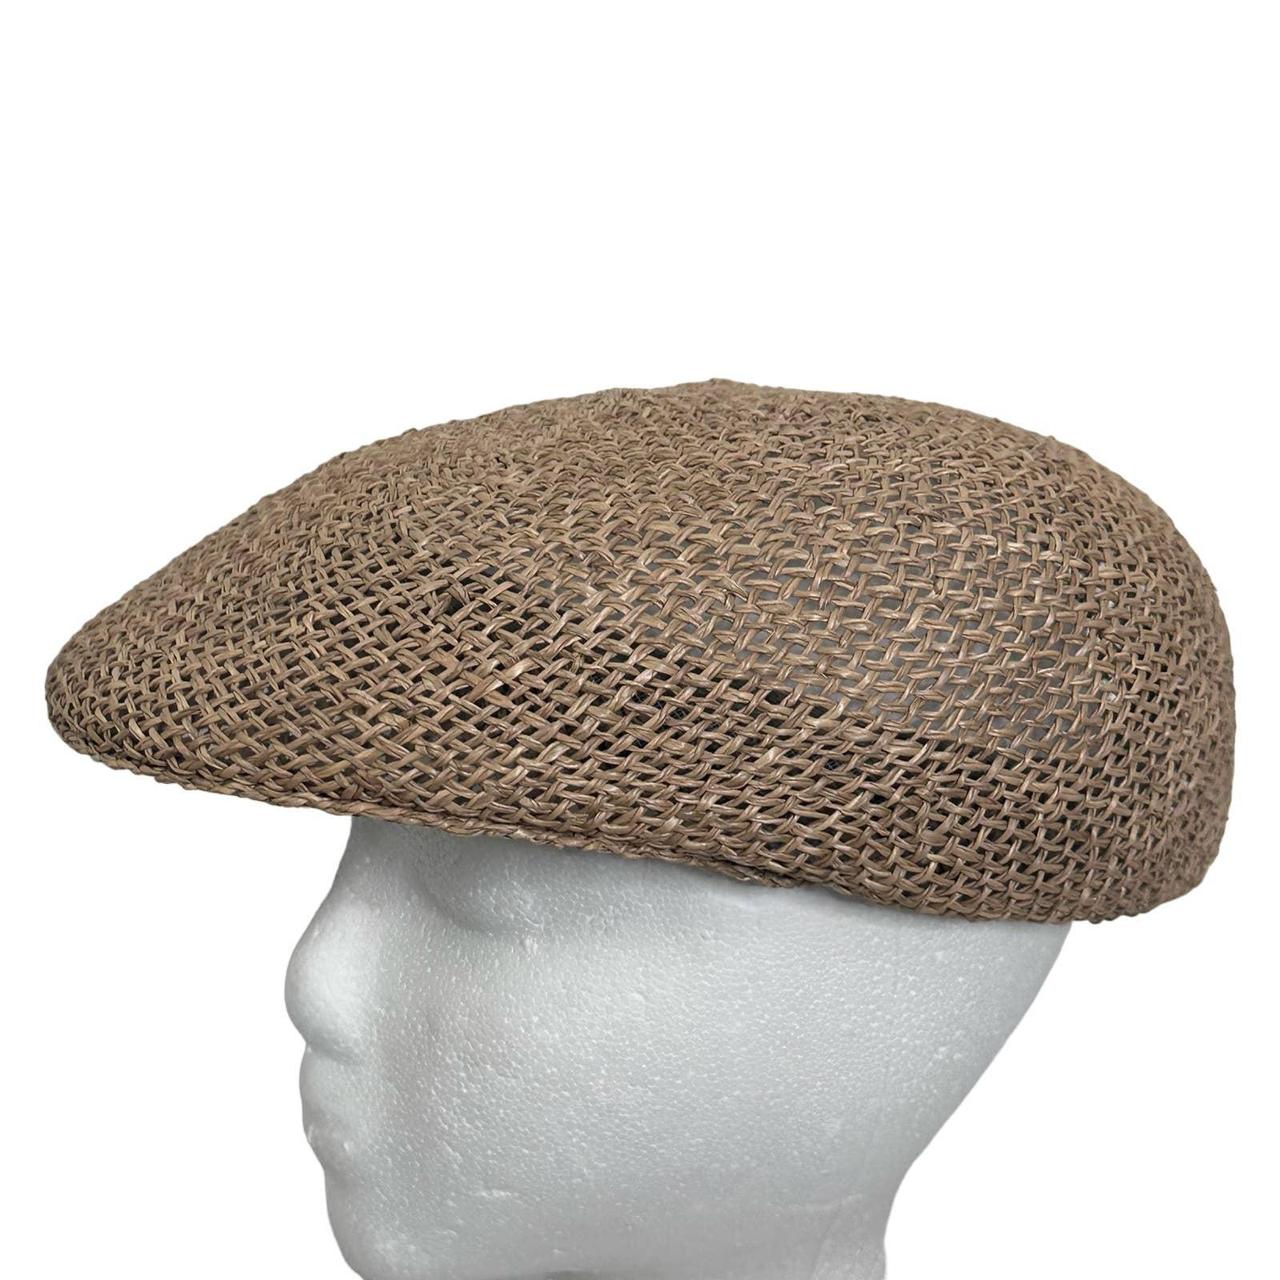 Country Gentleman Men's Brown Hat (2)